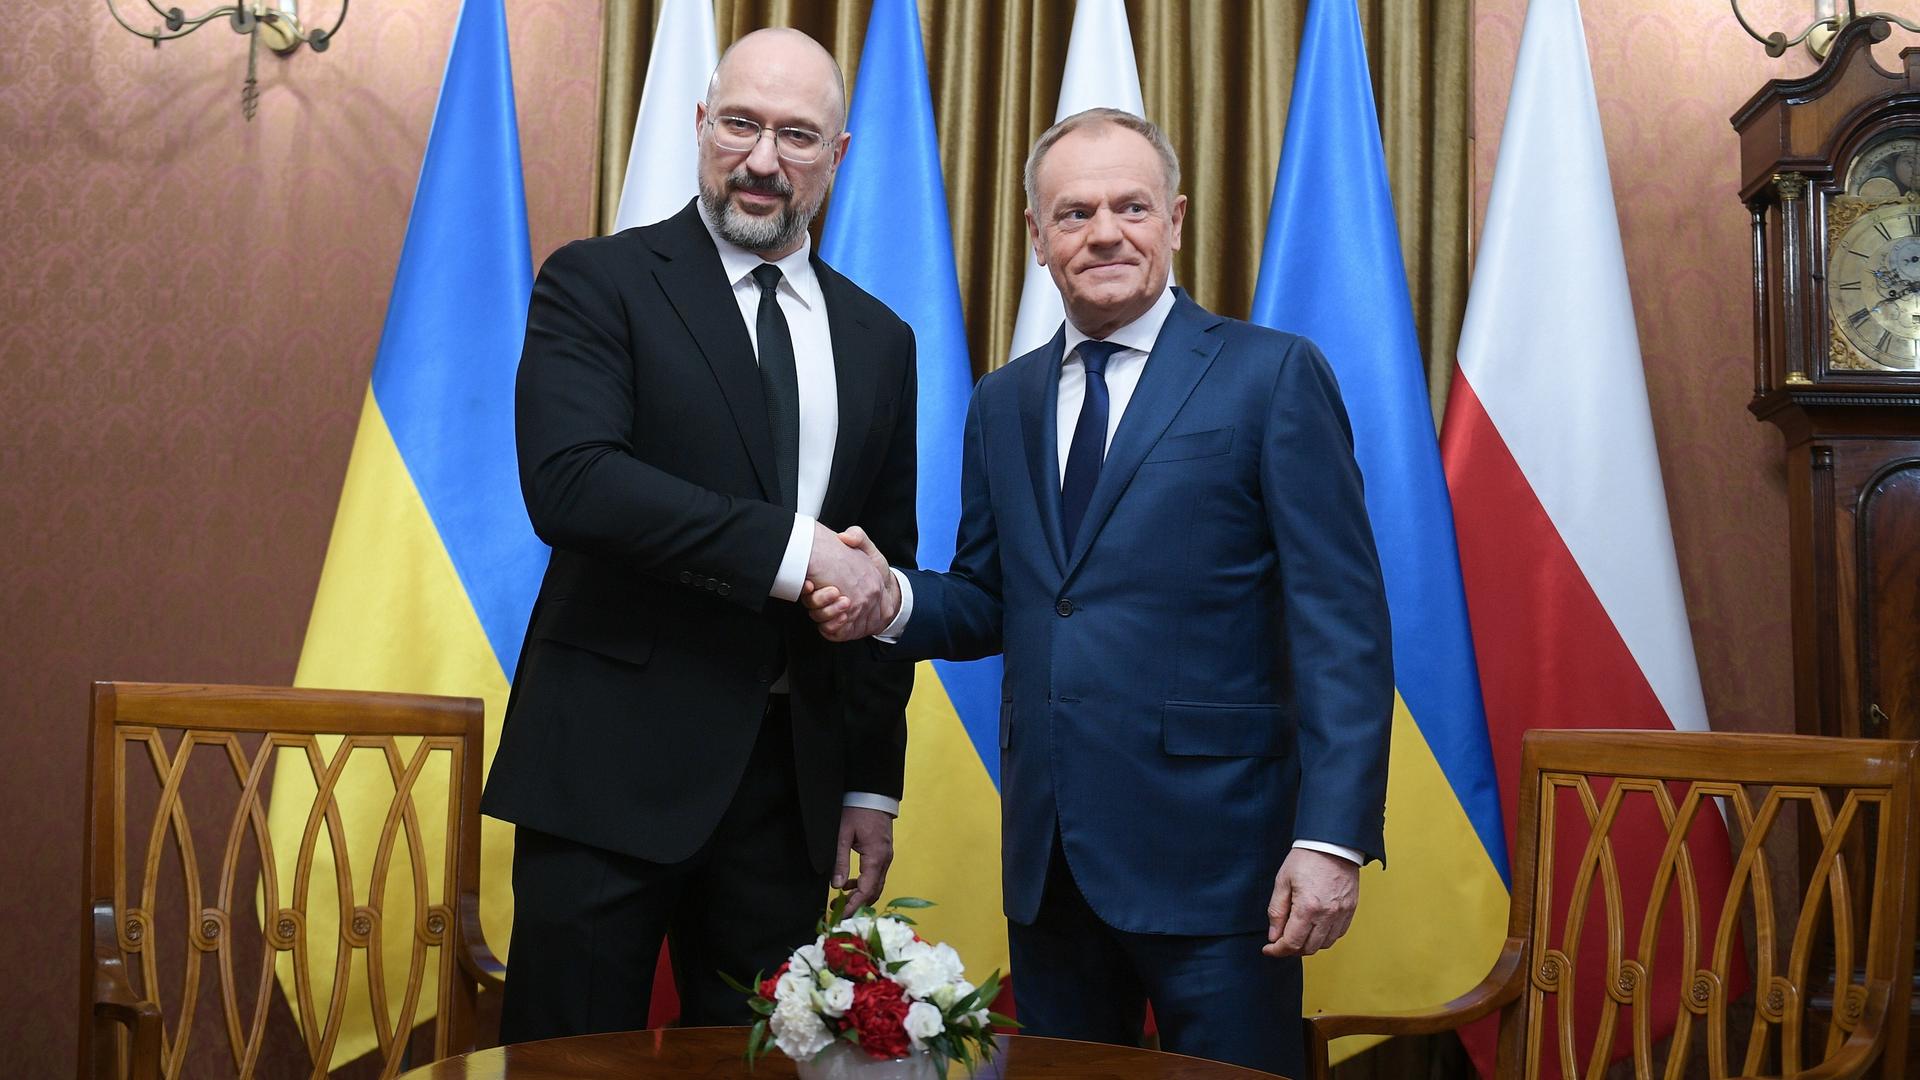 Warschau: Der ukrainische Ministerpräsident Denys Schmyhal, links, wird von seinem polnischen Amtskollegen Donald Tusk, rechts, vor ihren Gesprächen begrüßt.